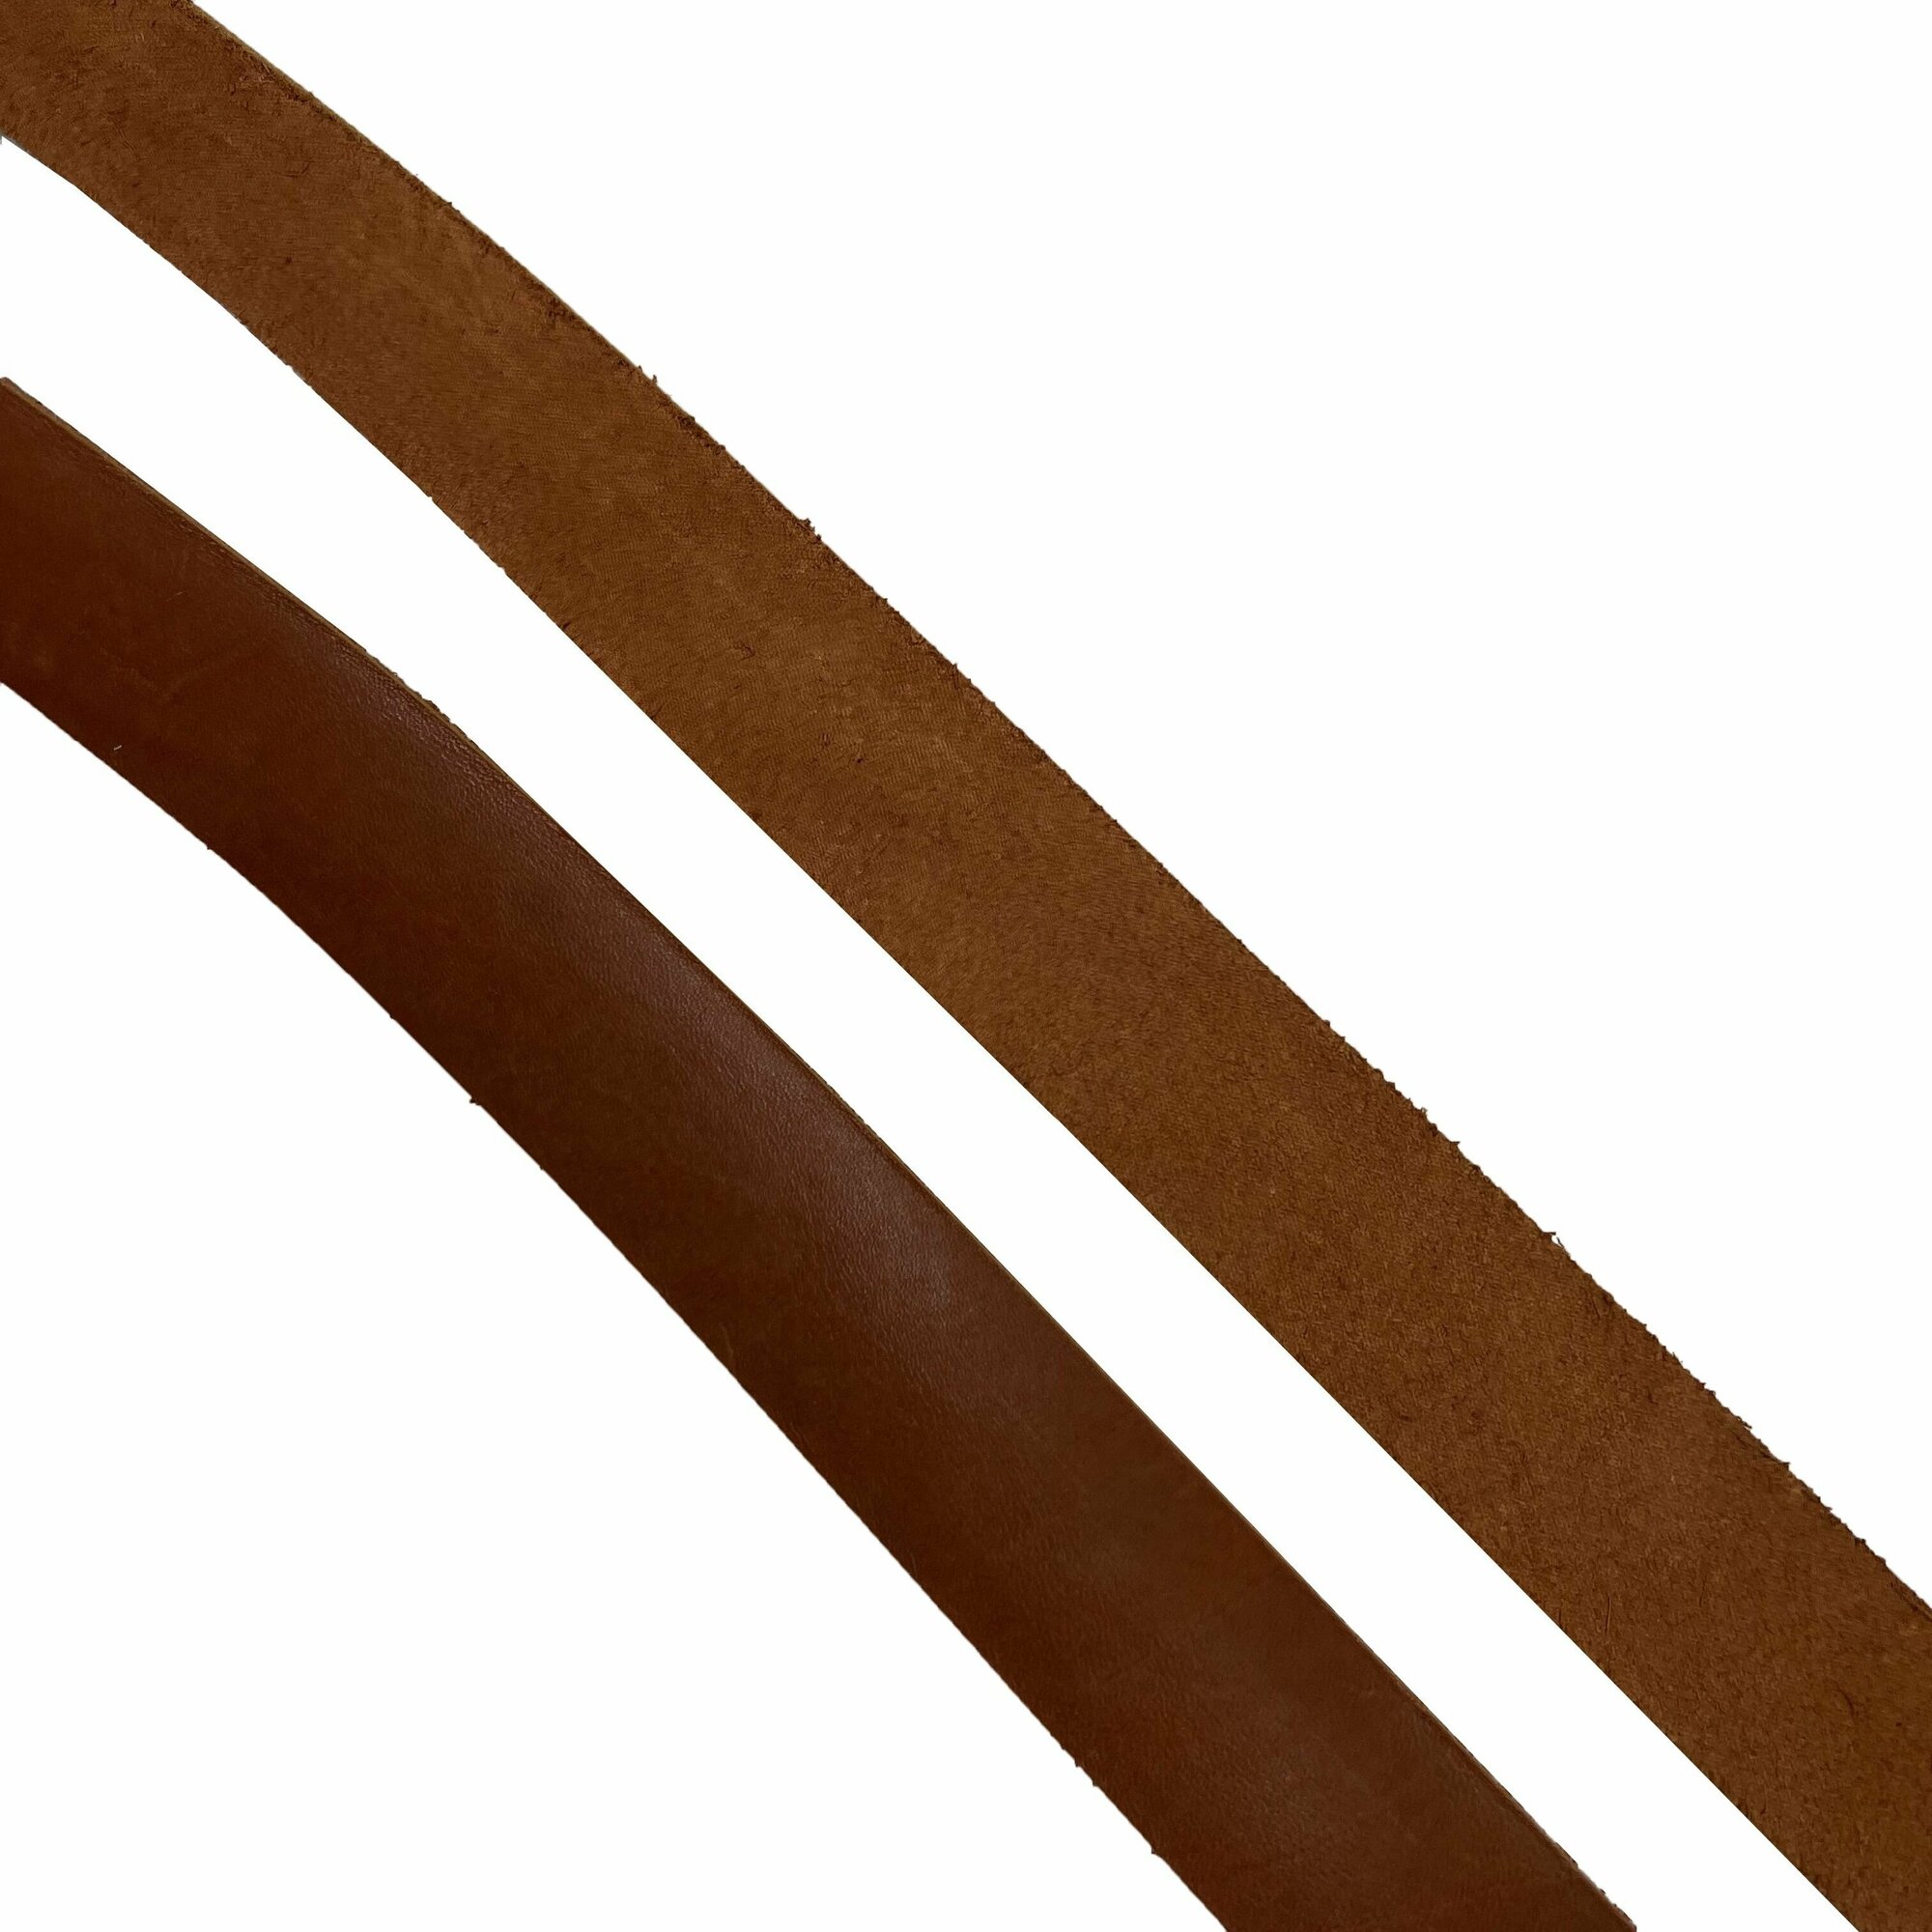 Ременная заготовка, коричневый цвет, натуральная кожа, толщина 3,5-4,0мм, ширина 40мм, длина 120-150см